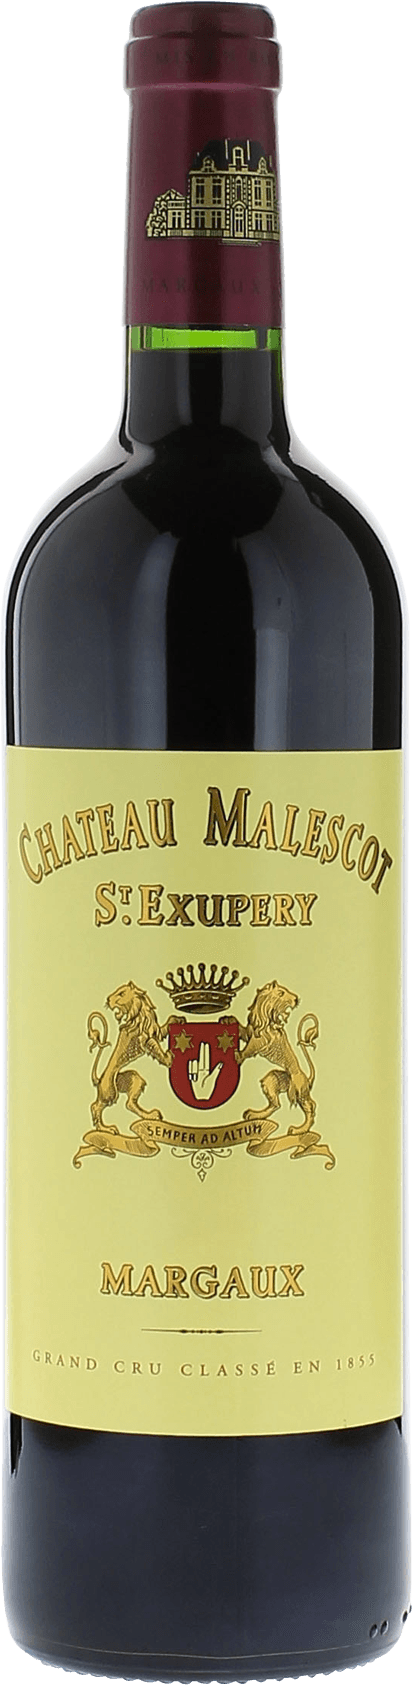 Malescot saint exupery 2005 3me Grand cru class Margaux, Bordeaux rouge